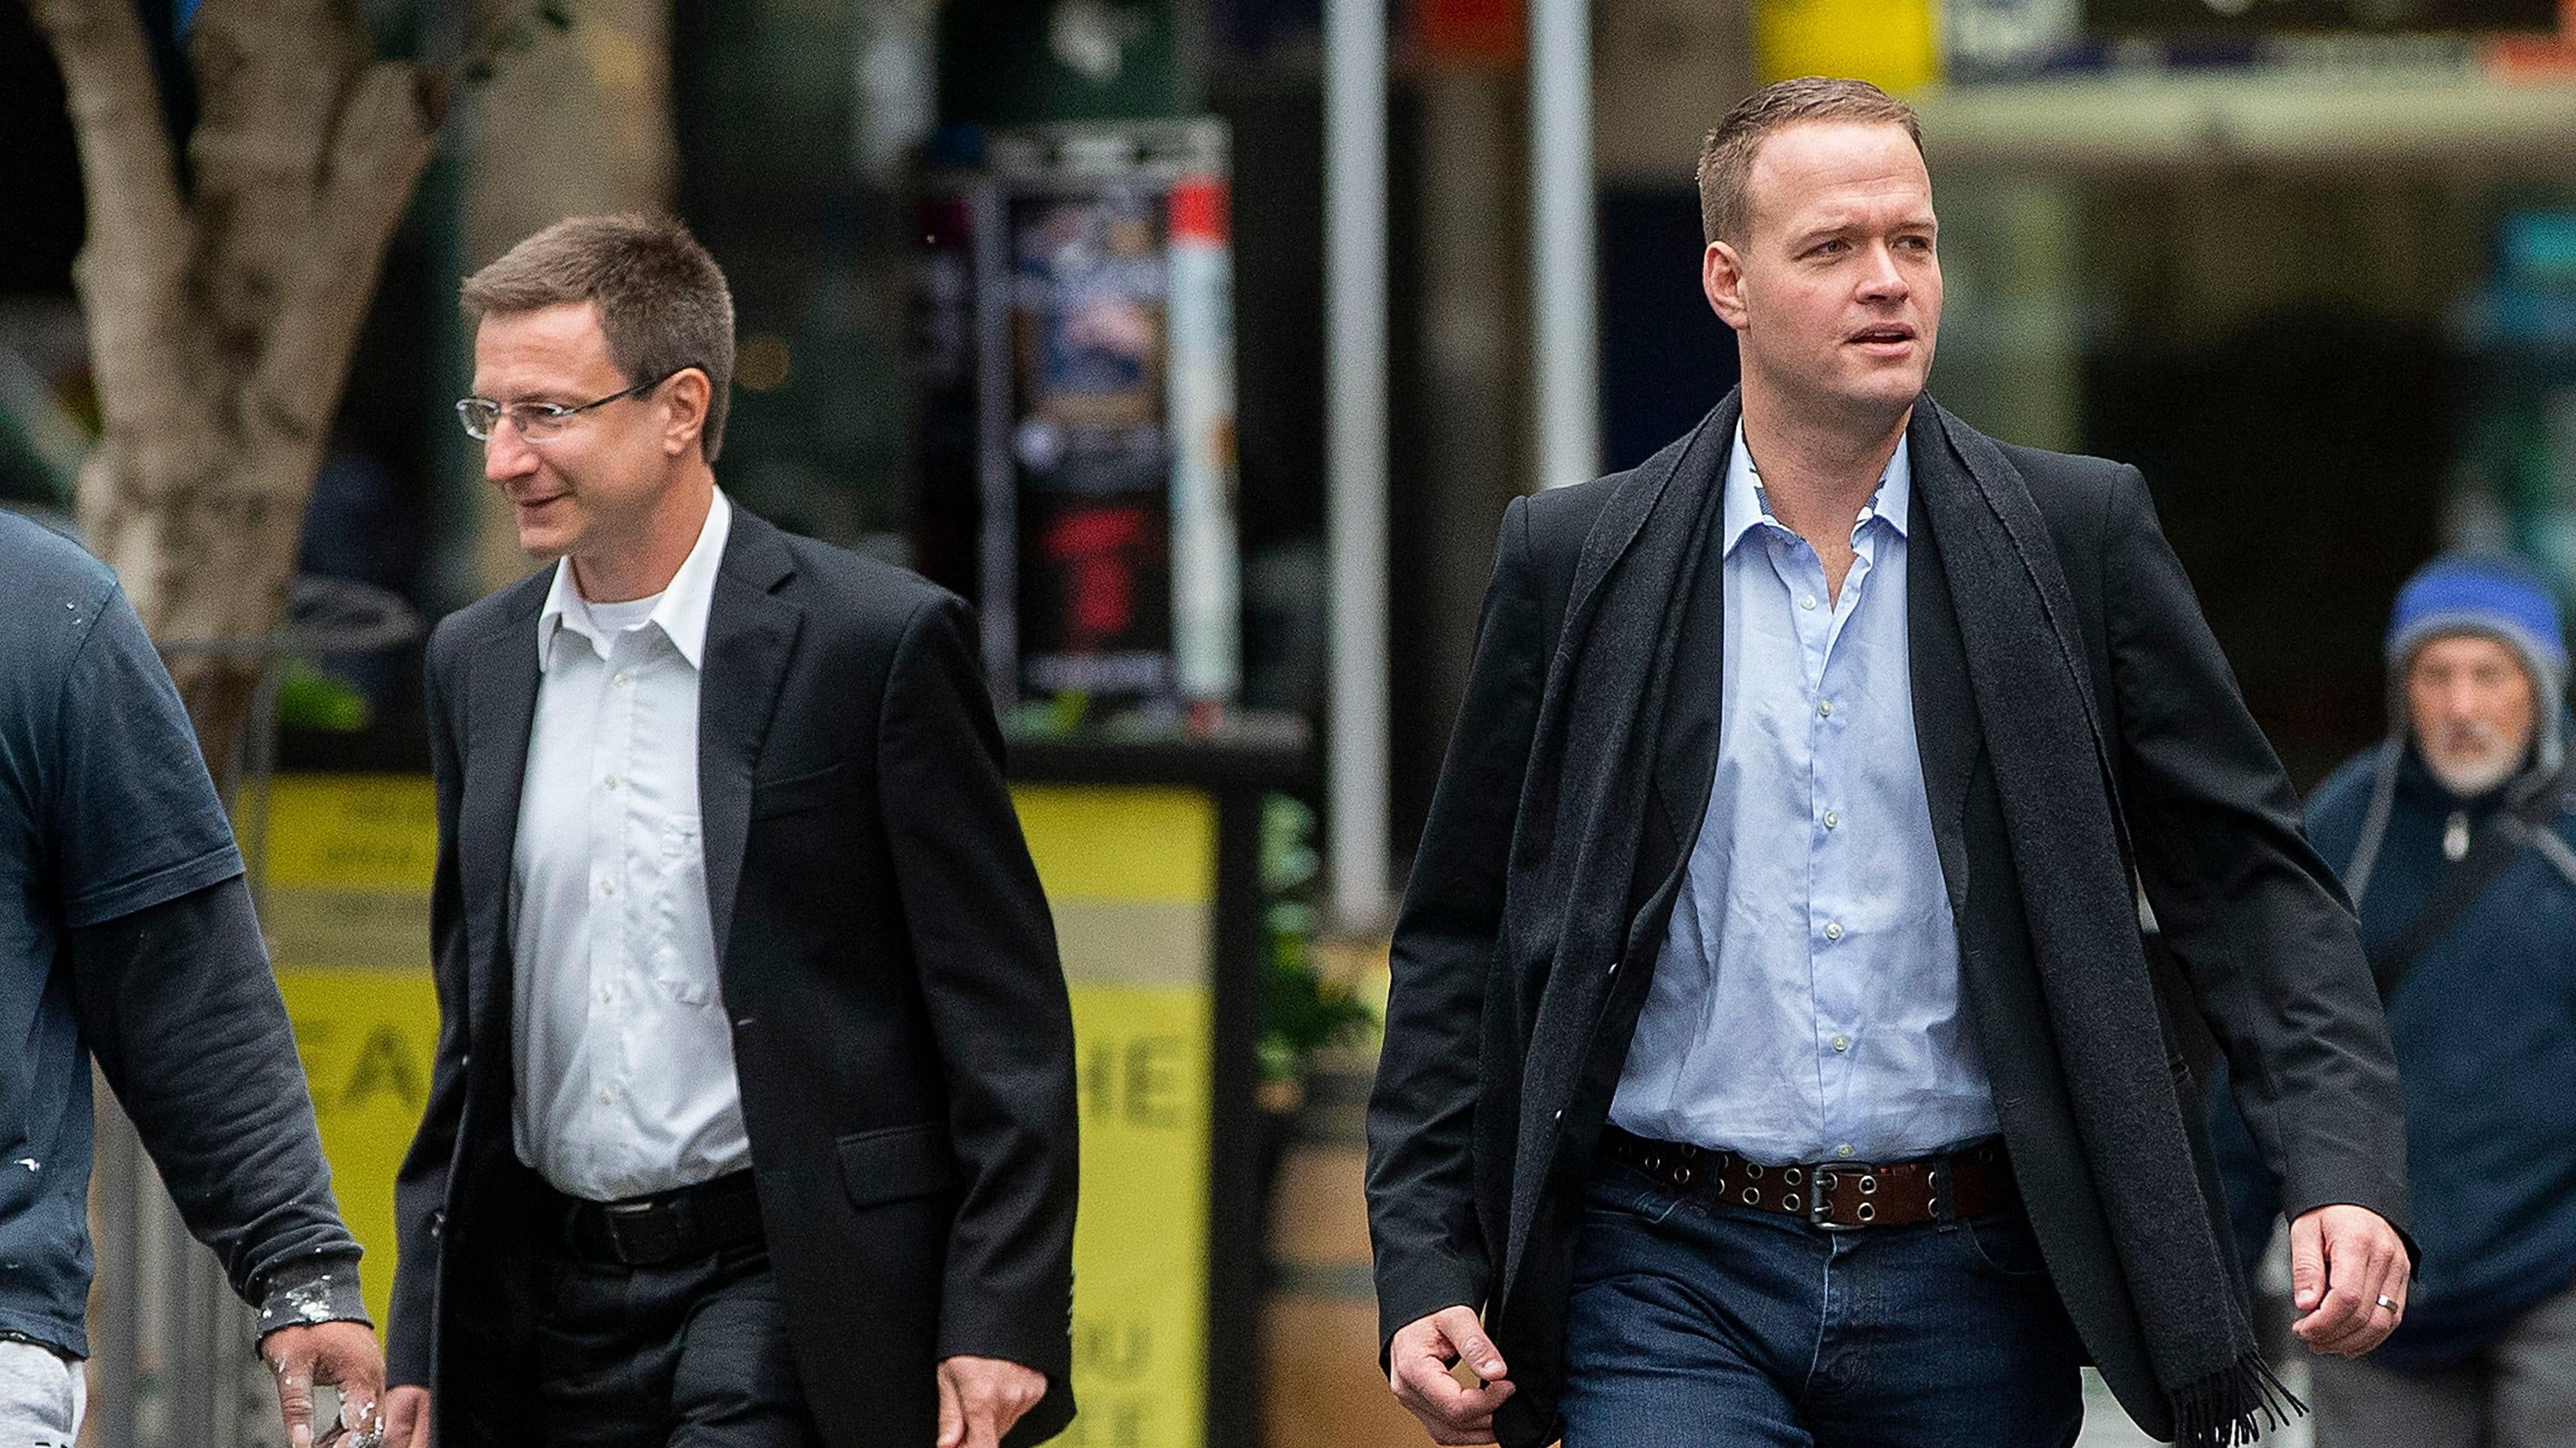   موظفو Megaupload السابقون ، ماتياس أورتمان (يسار) وبرام فان دير كولك ، يصلون إلى المحكمة العليا في 12 يونيو 2019 في ويلينجتون ، نيوزيلندا.